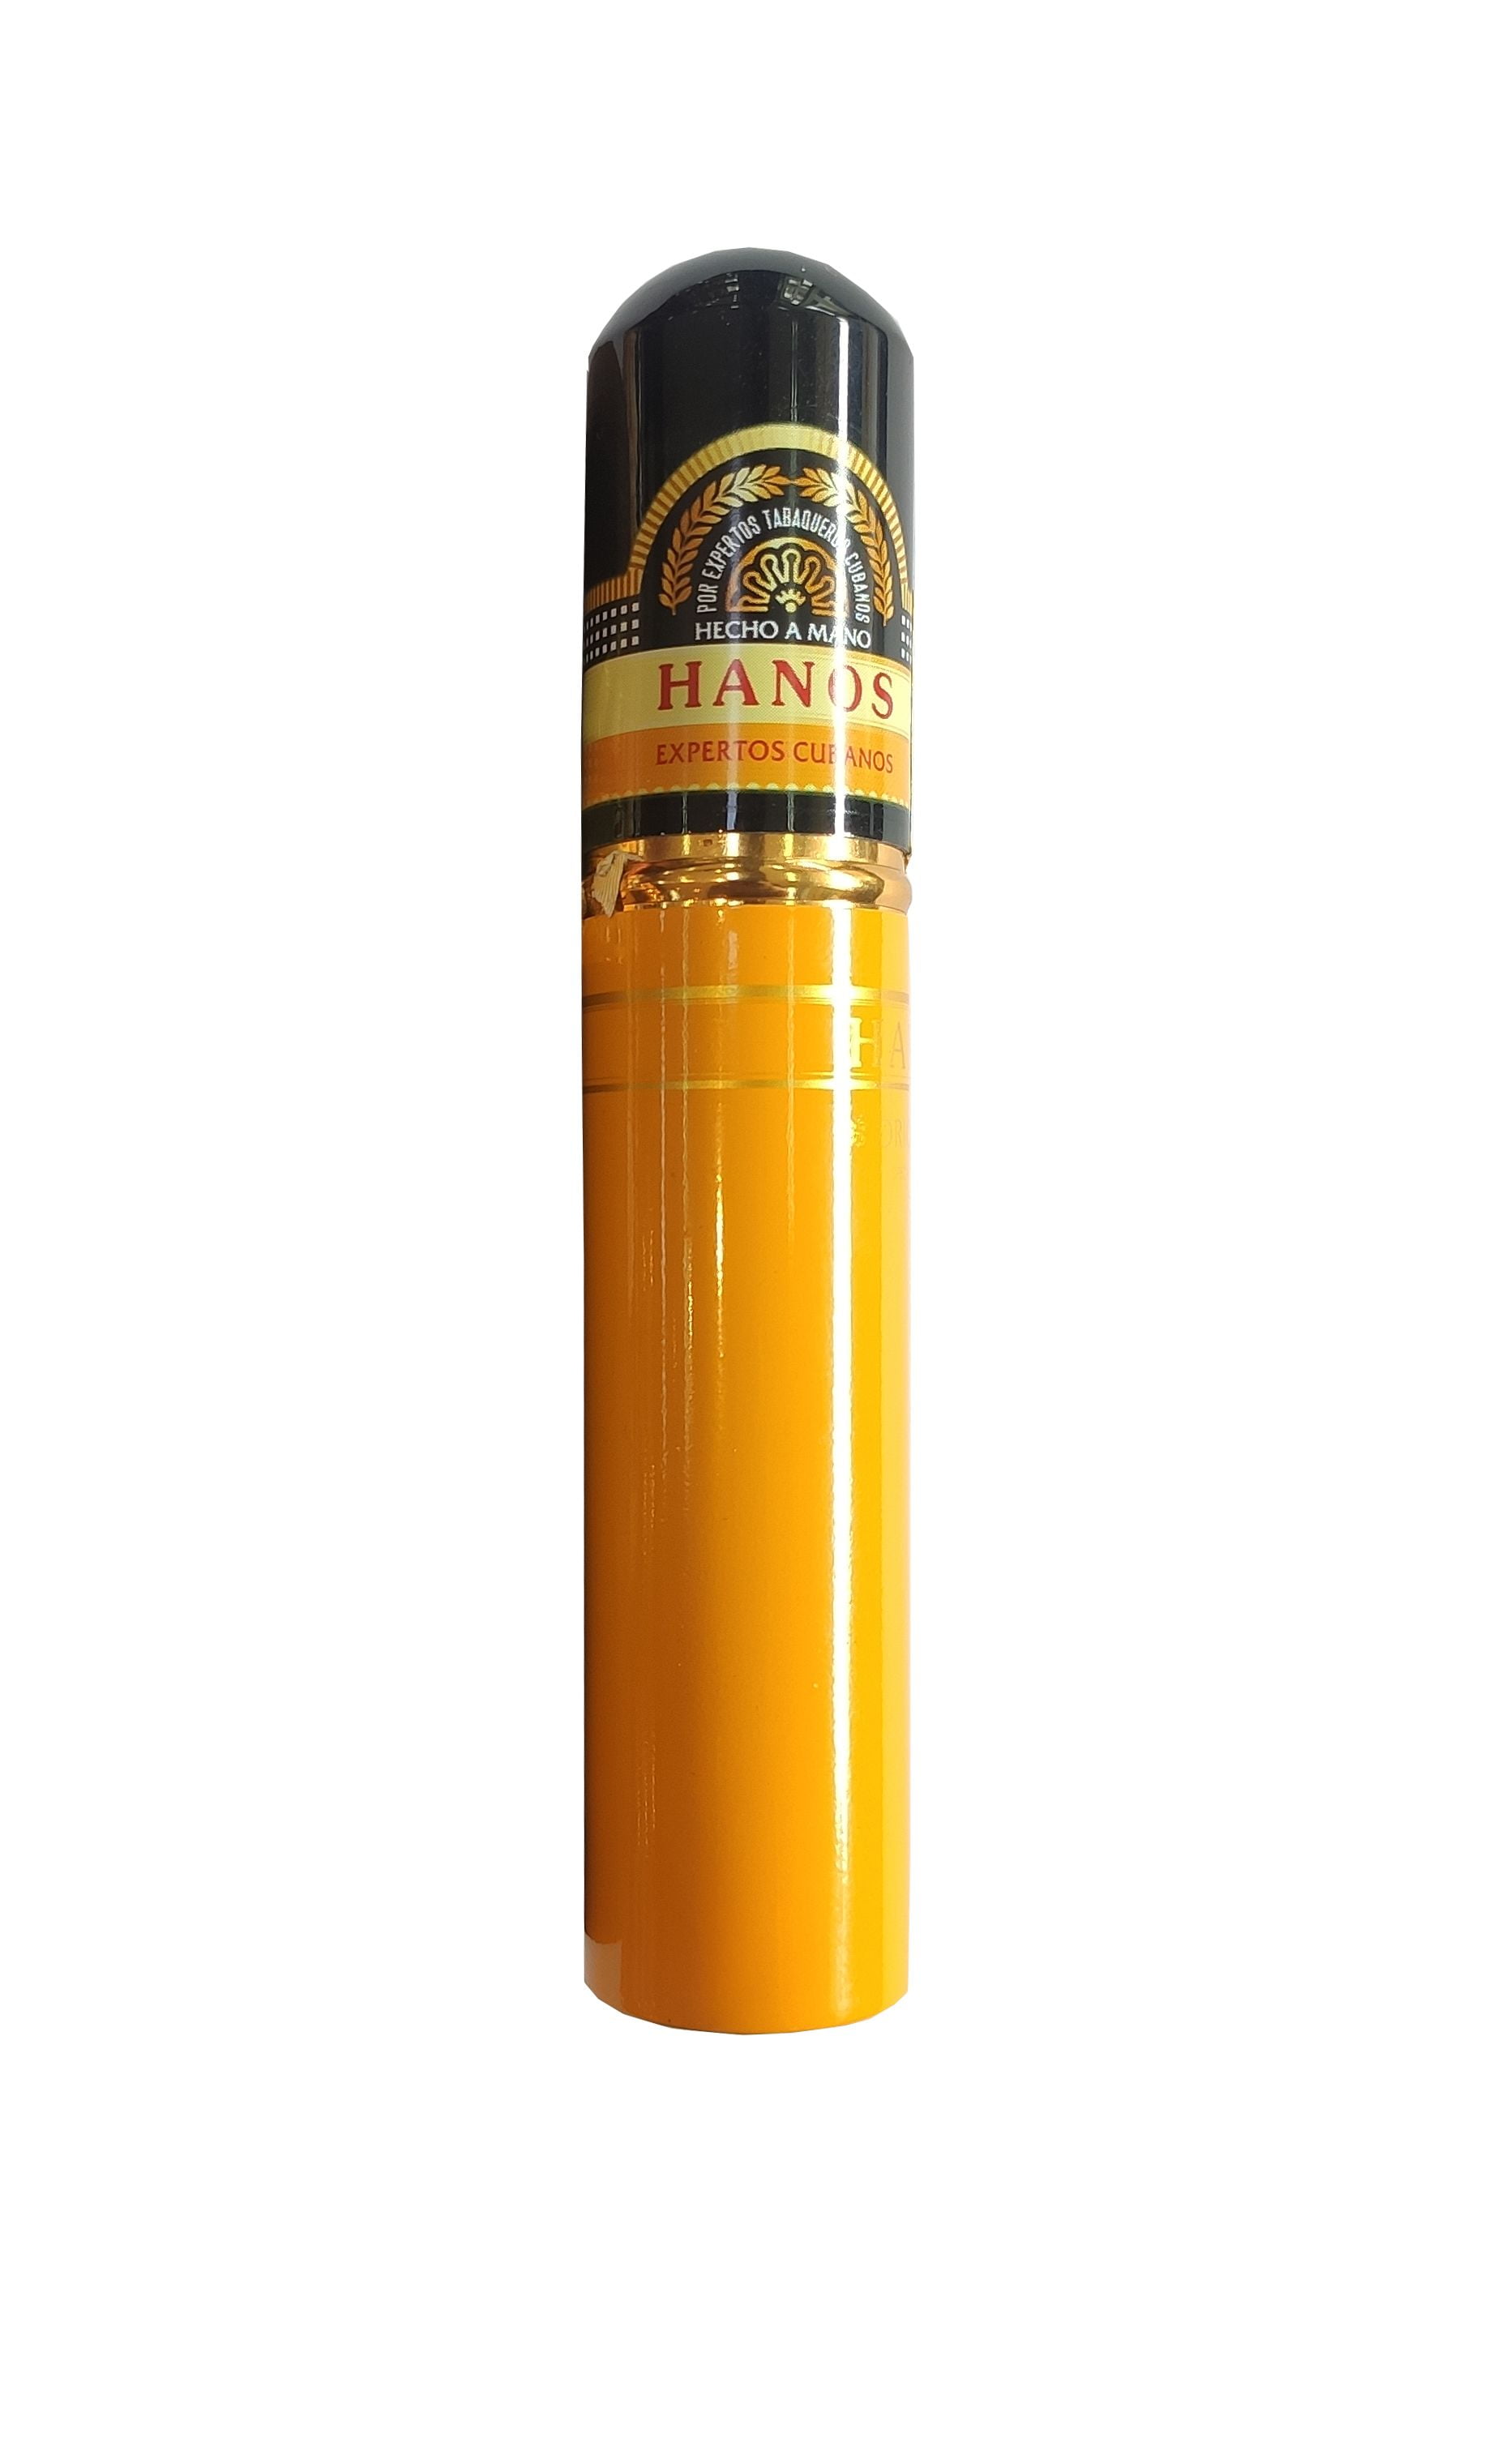 Cigar Hanos 52 (Hộp sơn mài 10 điếu)